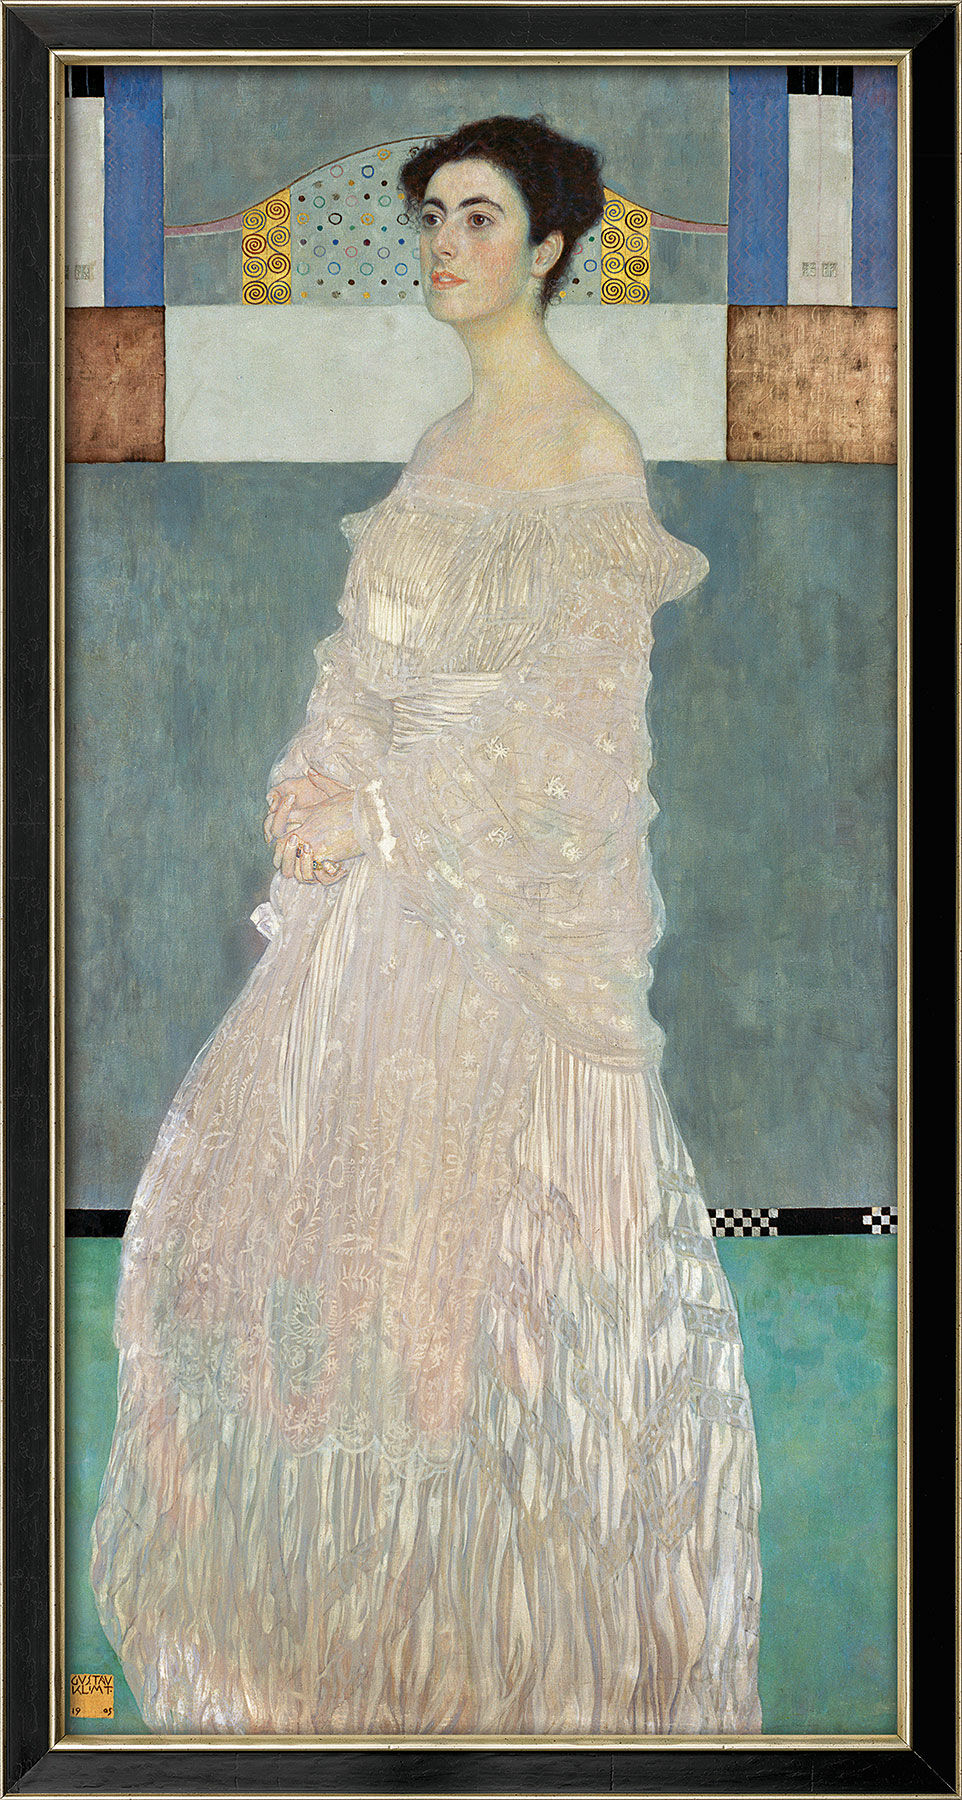 Bild "Margarethe Stonborough-Wittgenstein" (1905), gerahmt von Gustav Klimt